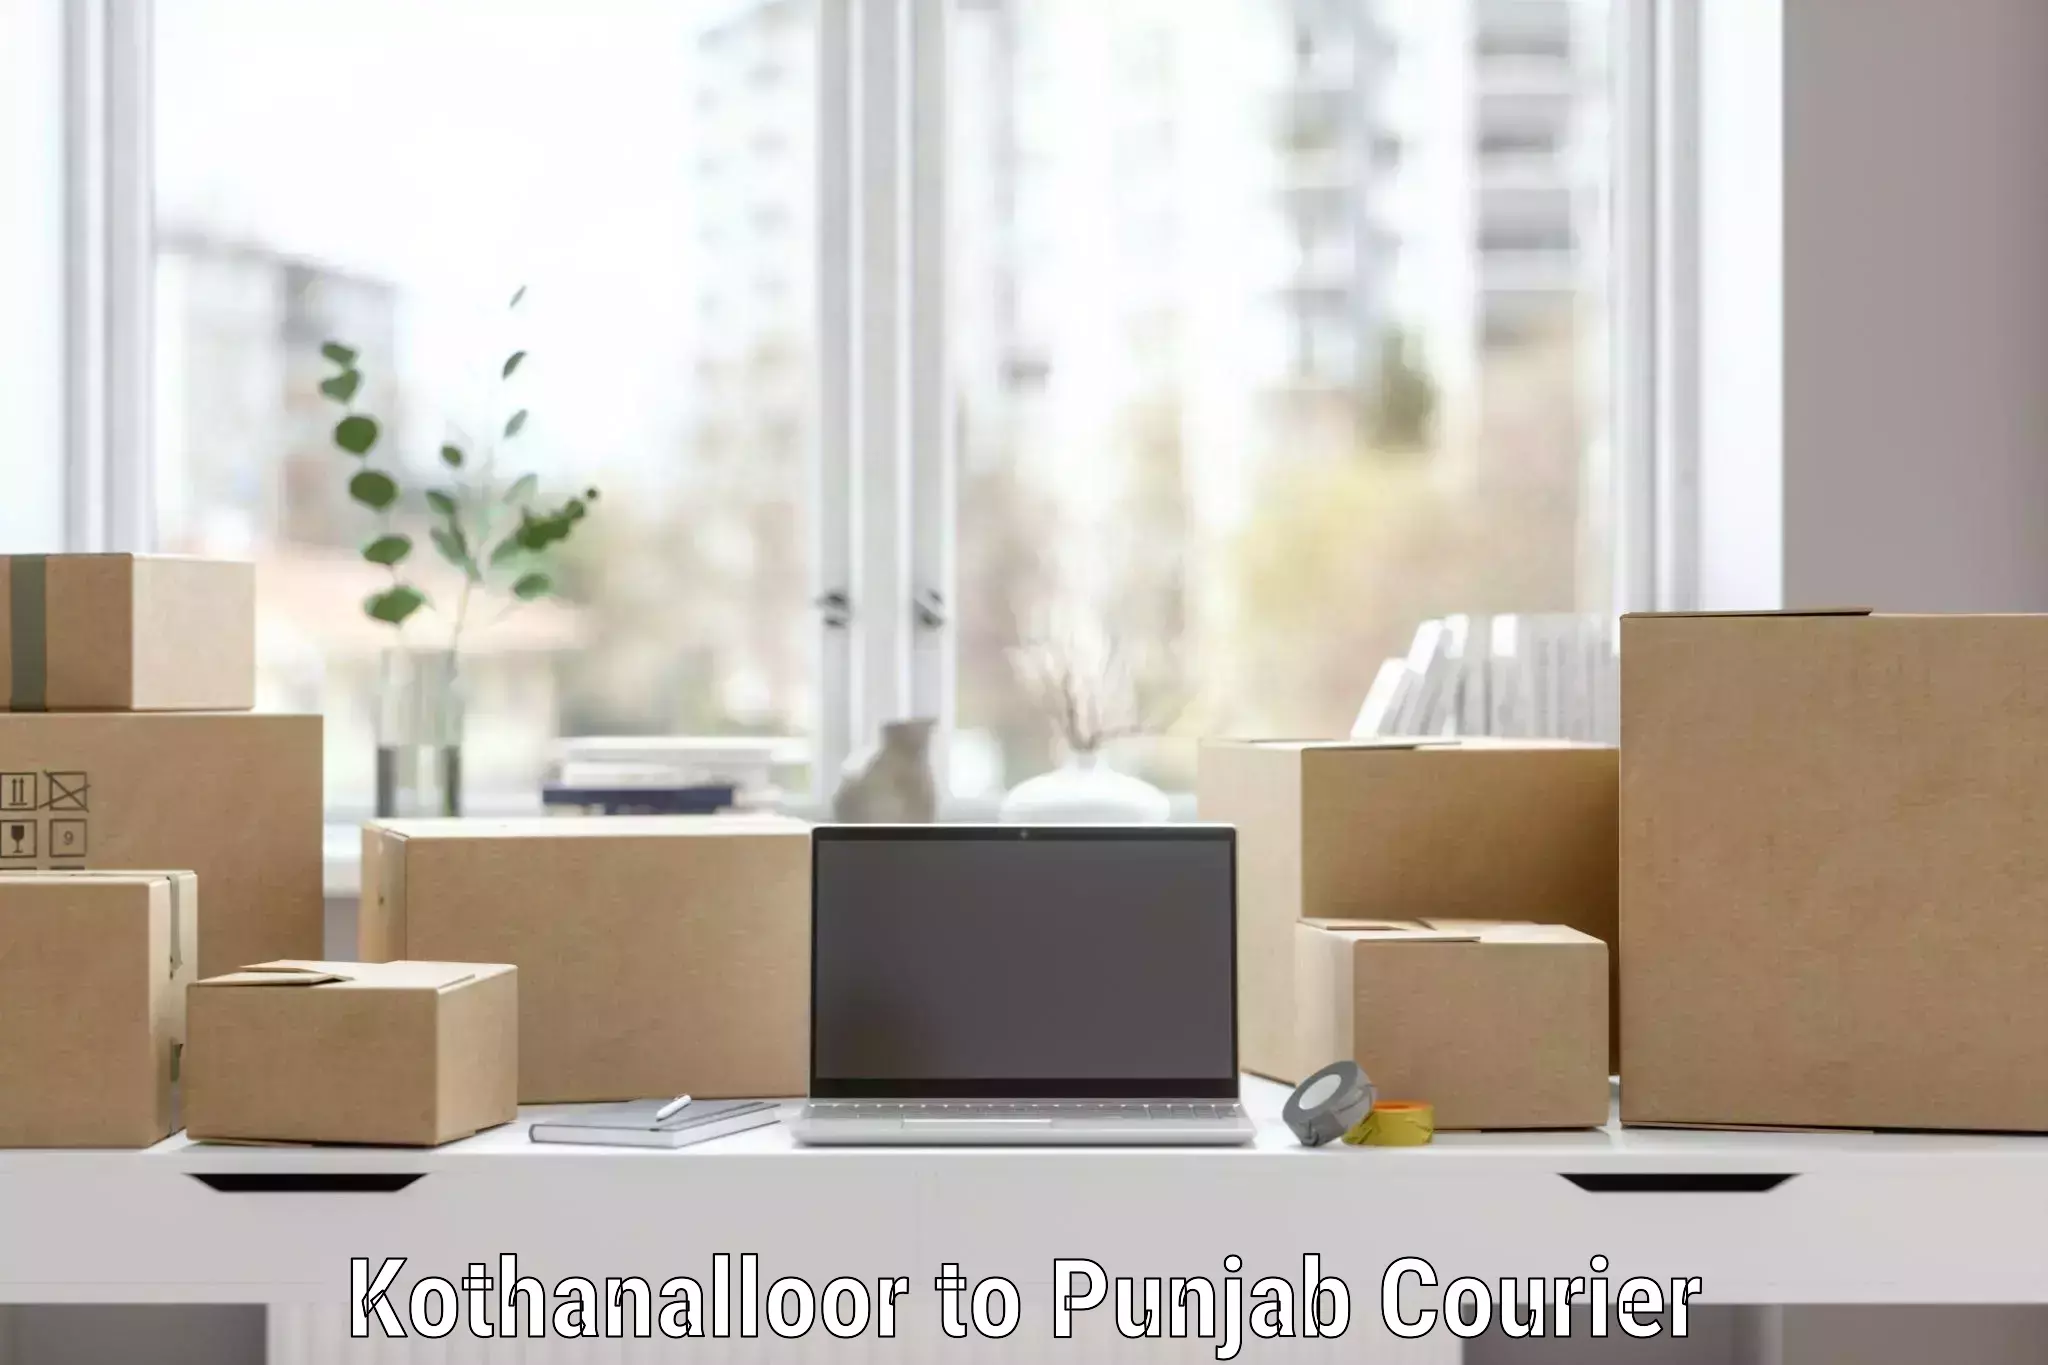 Quality furniture shipping Kothanalloor to Punjab